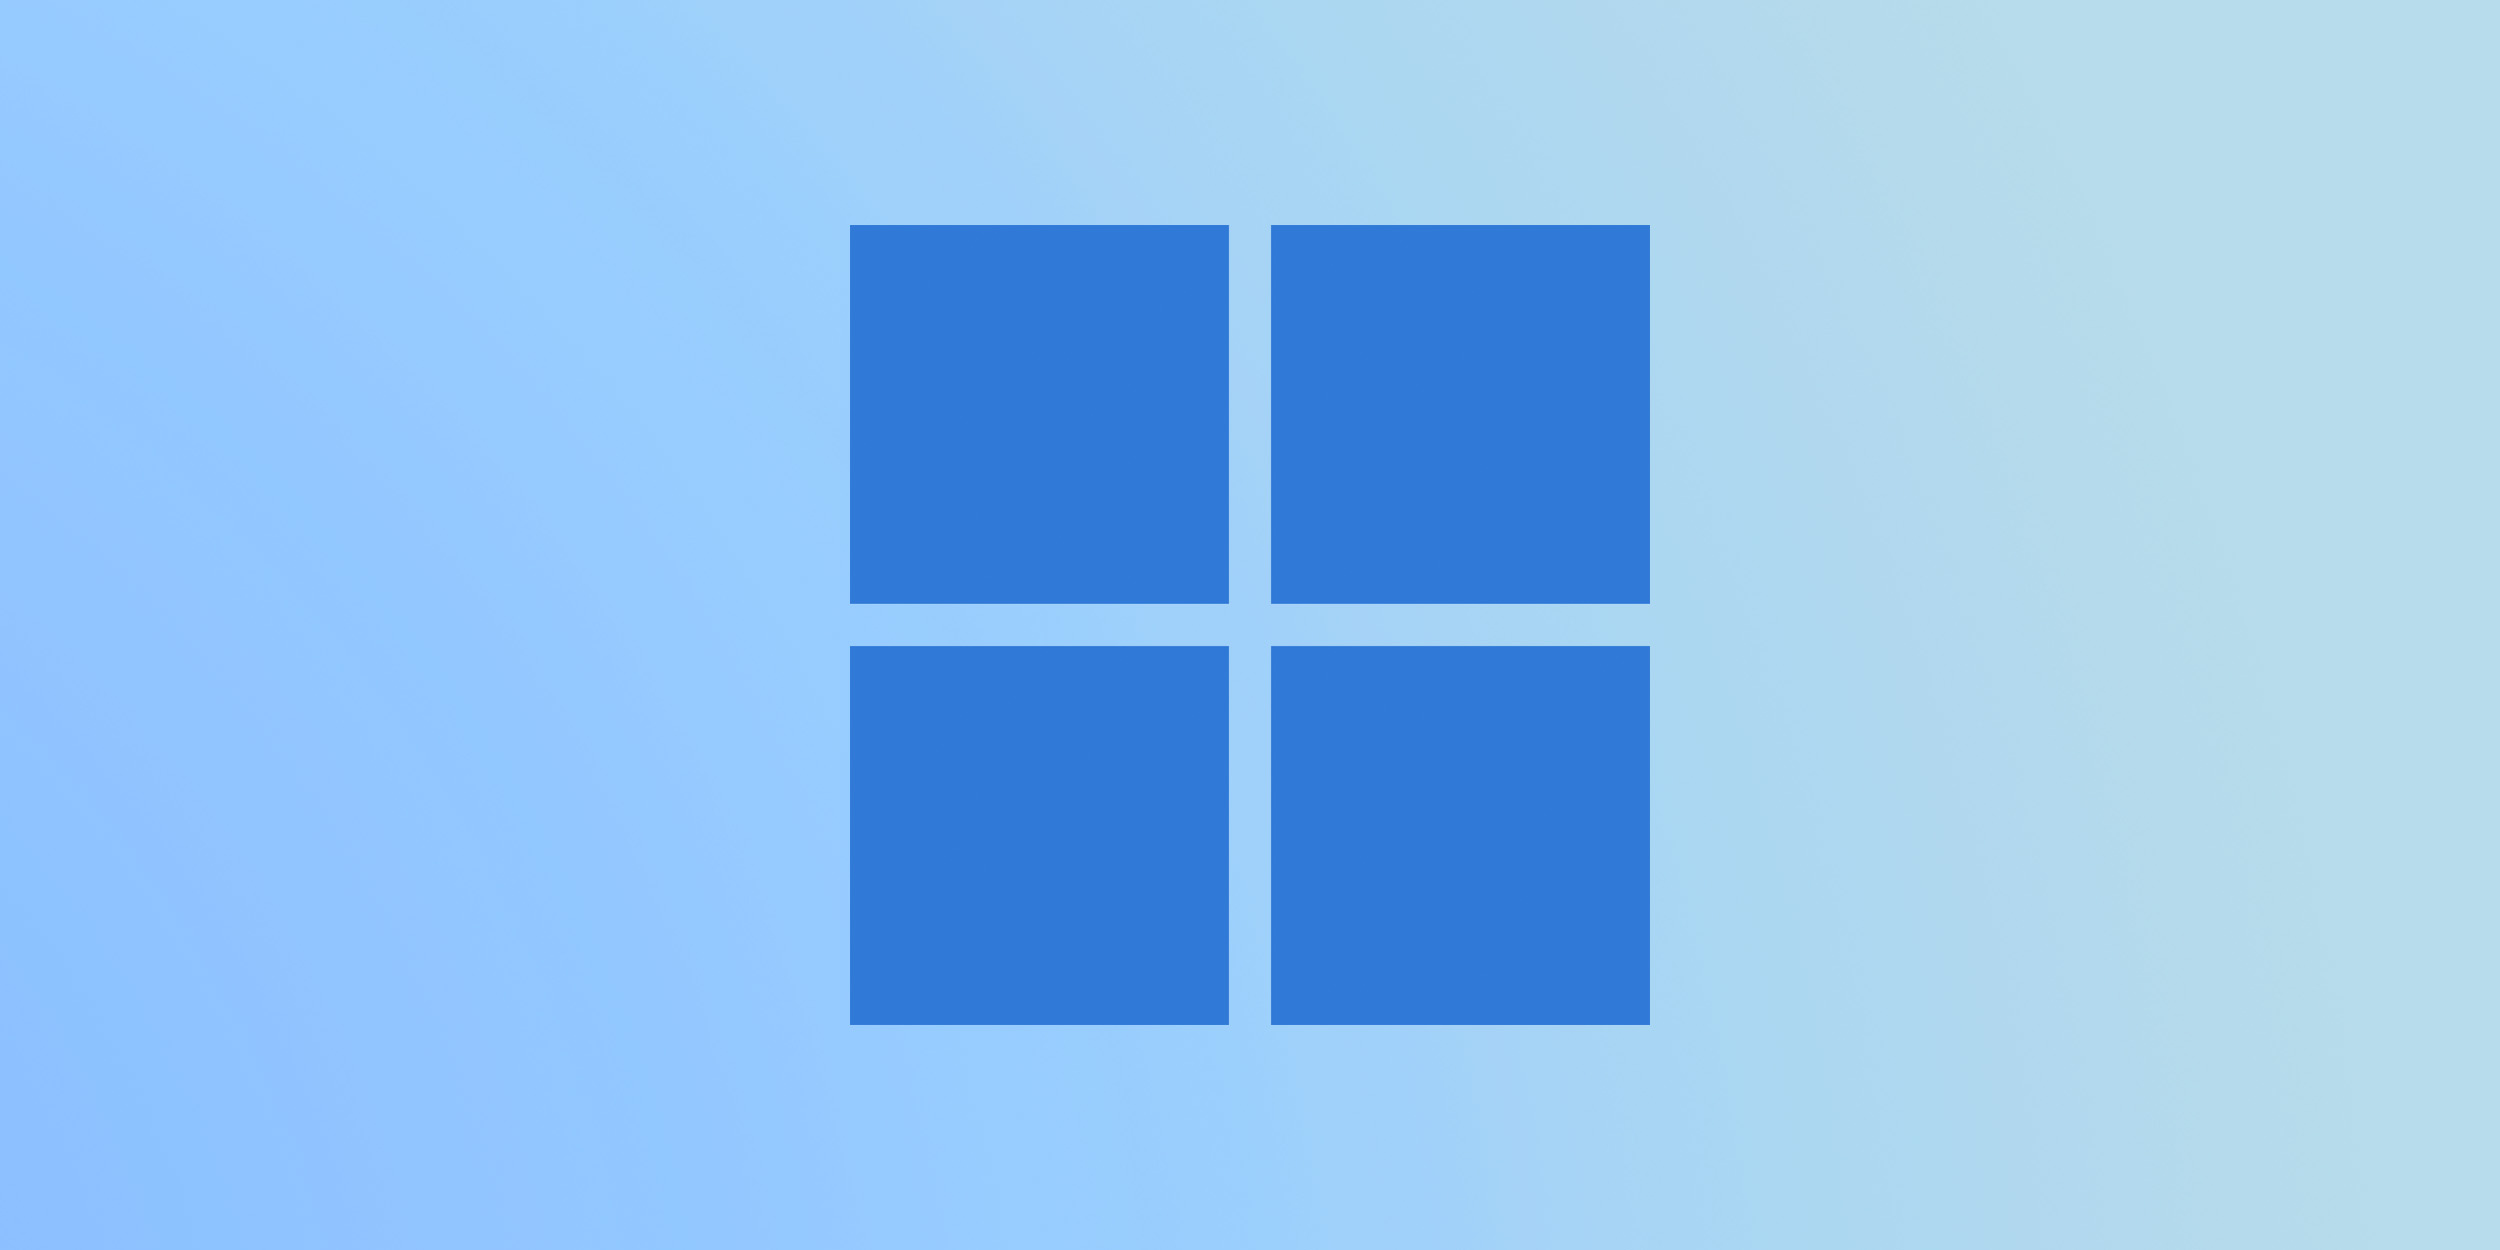 RoundedTB — бесплатная программа для изменения оформления панели задач Windows 11 и 10